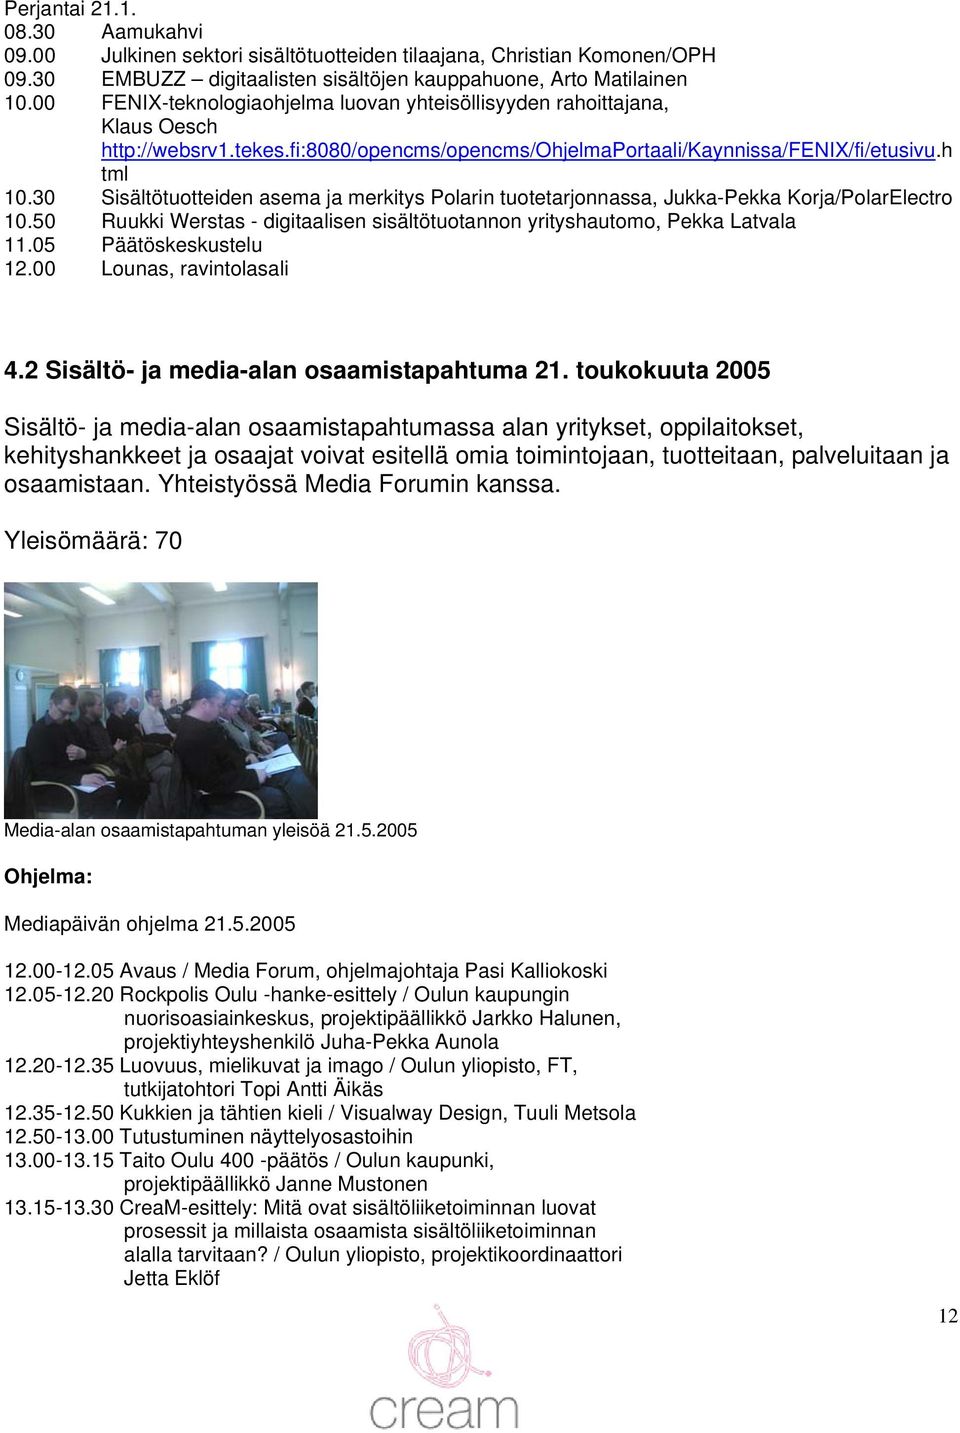 30 Sisältötuotteiden asema ja merkitys Polarin tuotetarjonnassa, Jukka-Pekka Korja/PolarElectro 10.50 Ruukki Werstas - digitaalisen sisältötuotannon yrityshautomo, Pekka Latvala 11.